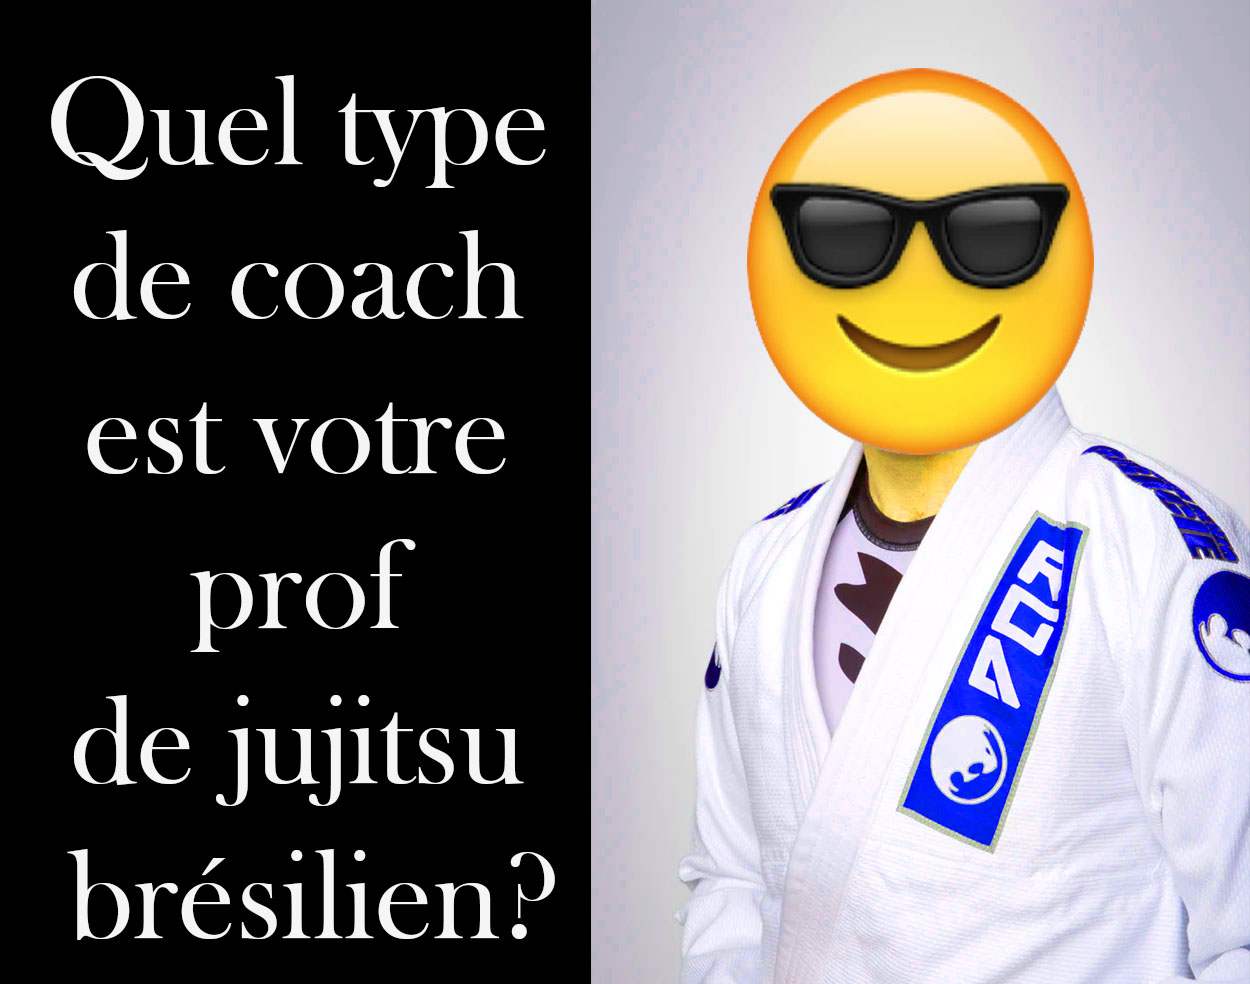 Quel type de coach est votre prof de jujitsu brésilien?